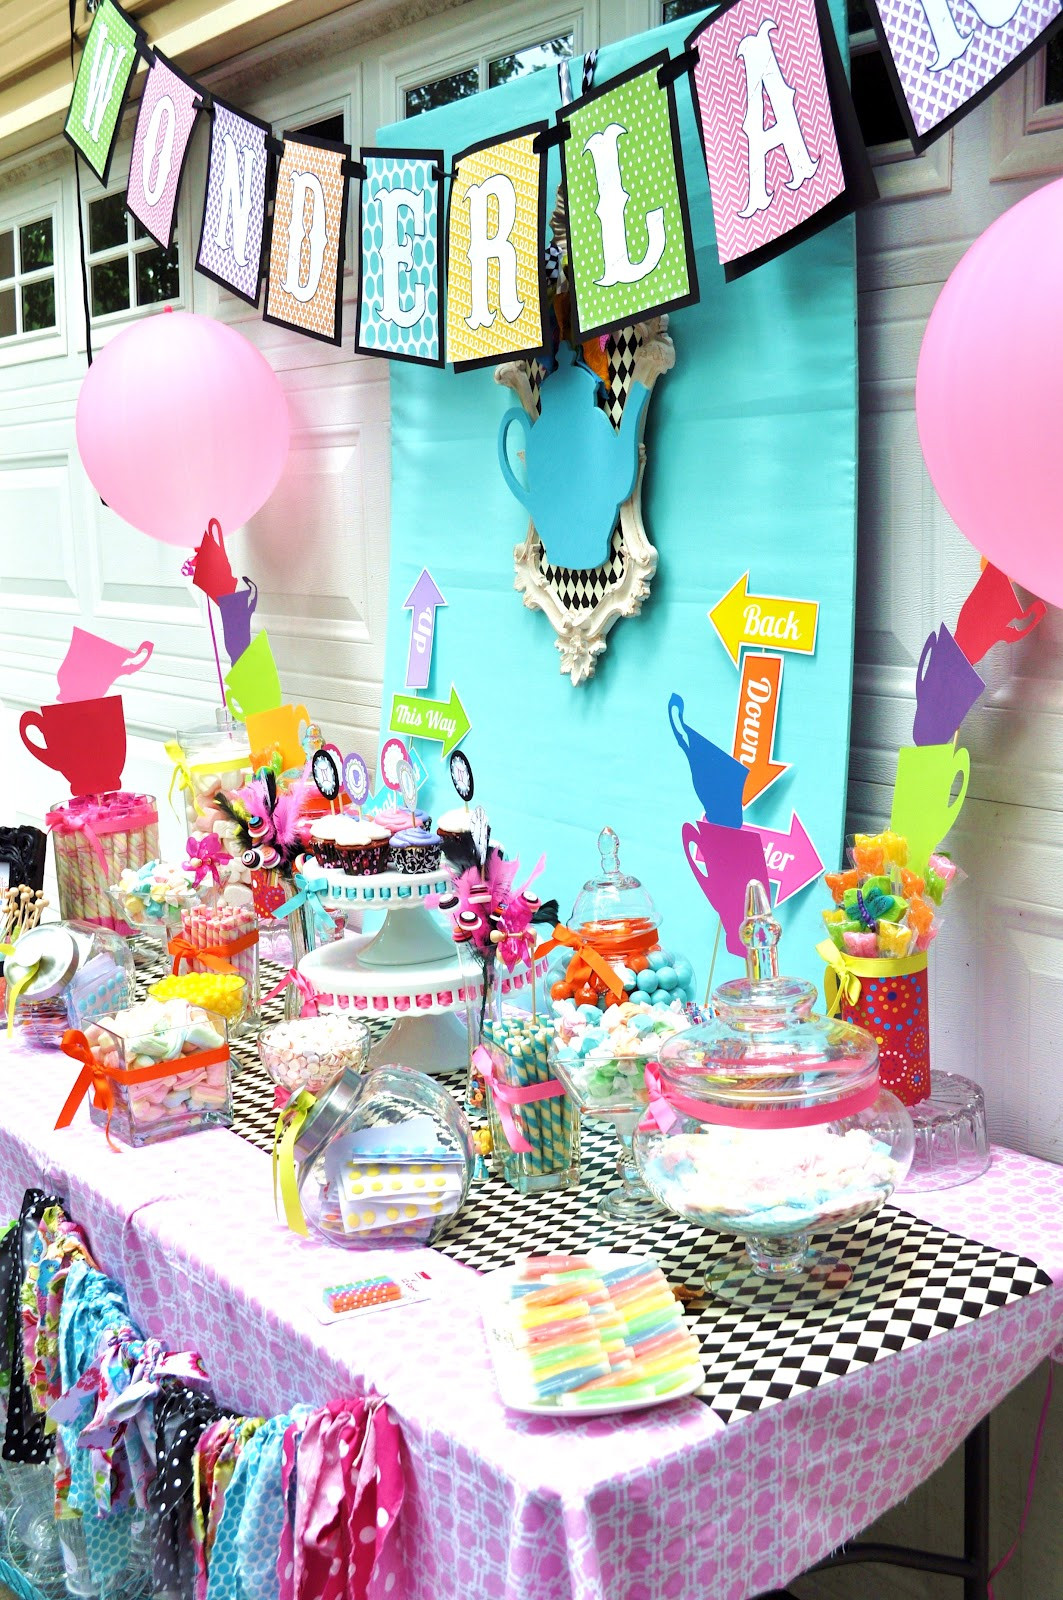 Best ideas about Alice In Wonderland Birthday Party
. Save or Pin Meghily s ALICE IN WONDERLAND PARTY Now.